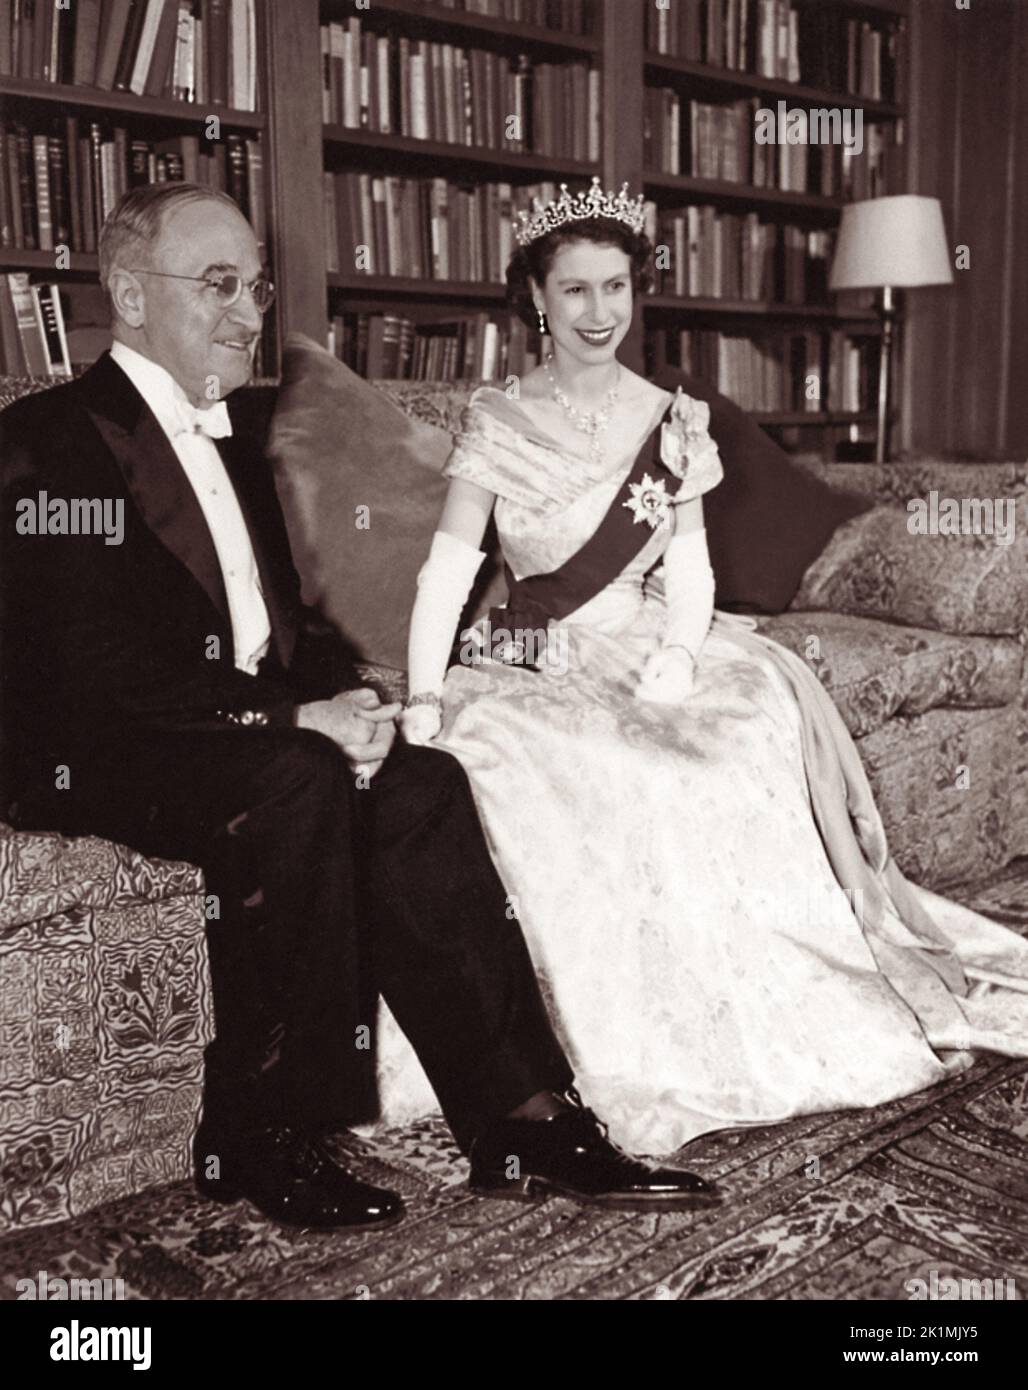 Truman e la principessa Elisabetta di Gran Bretagna posano per una fotografia presso l'Ambasciata Canadese a Washington, D.C. il 1 novembre 1951 durante la visita della principessa negli Stati Uniti. Foto Stock